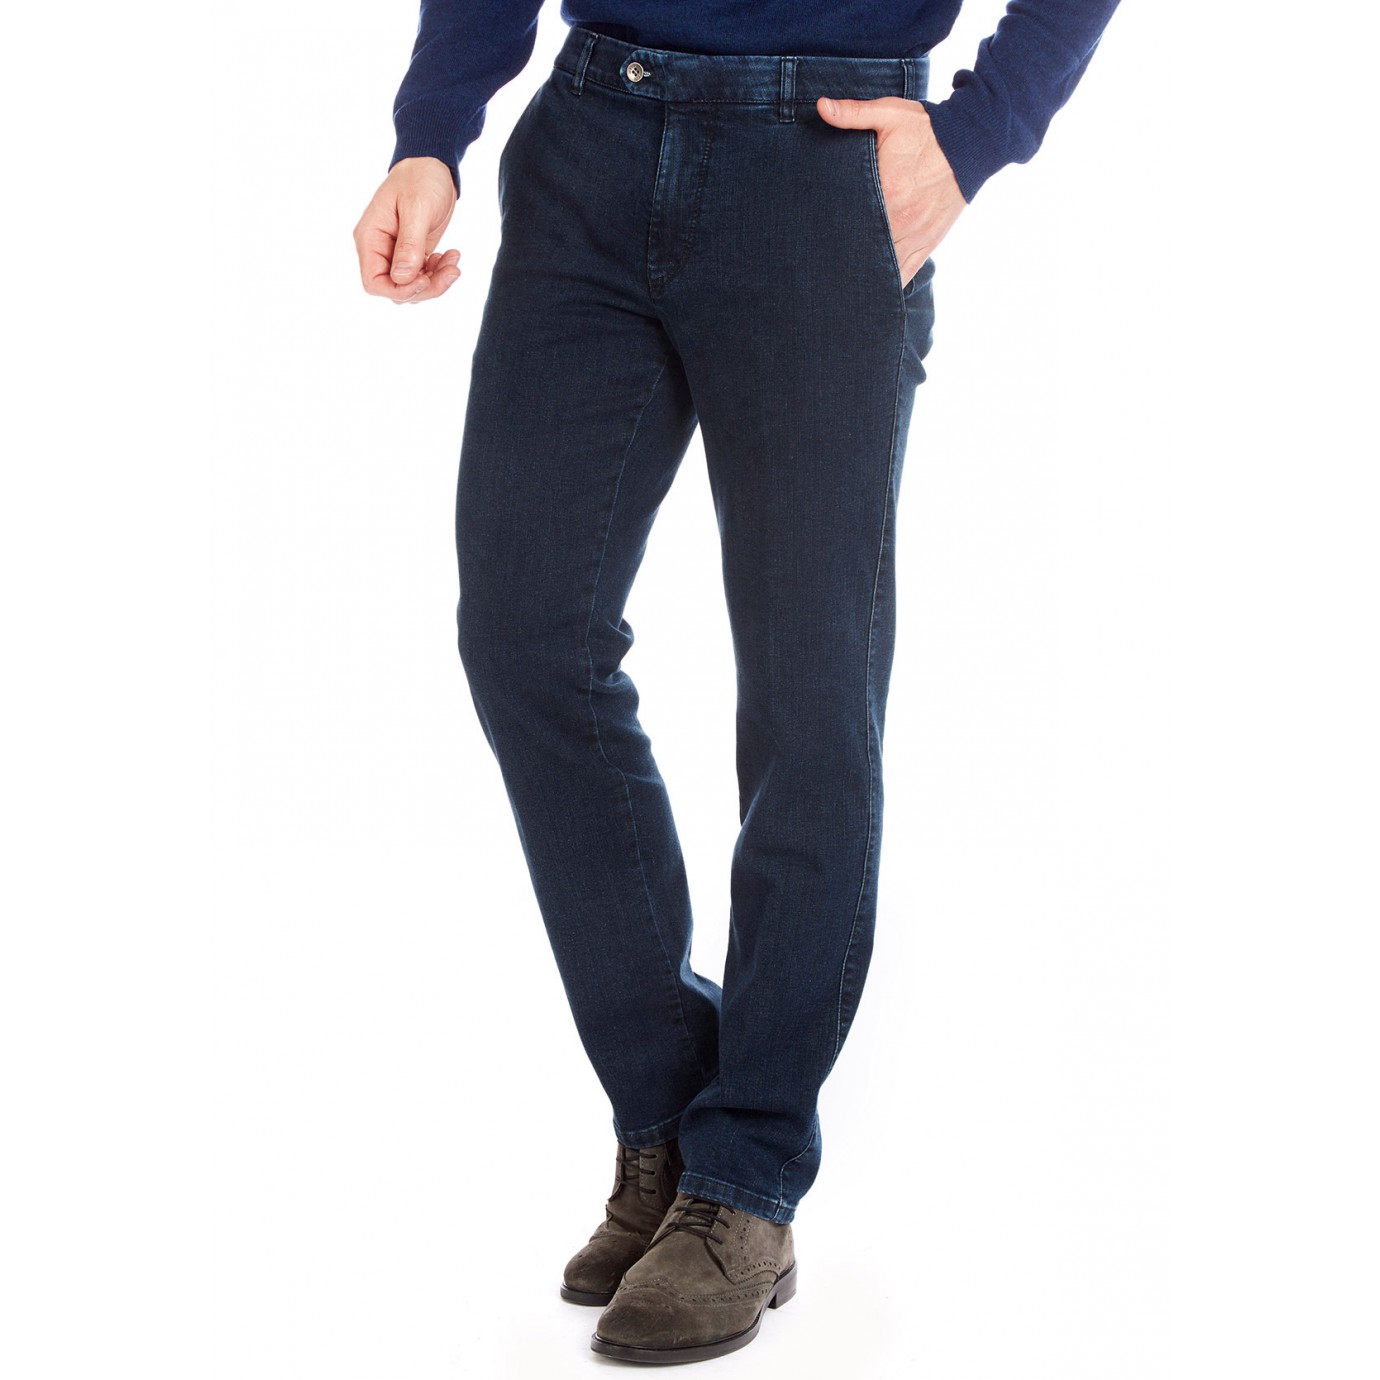 Хлопковые мужские брюки Meyer, модель Bonn 6-485/20 синие, джинсовые купитьв Москве в интернет-магазине SHOP4BIG - цена, фото, описание